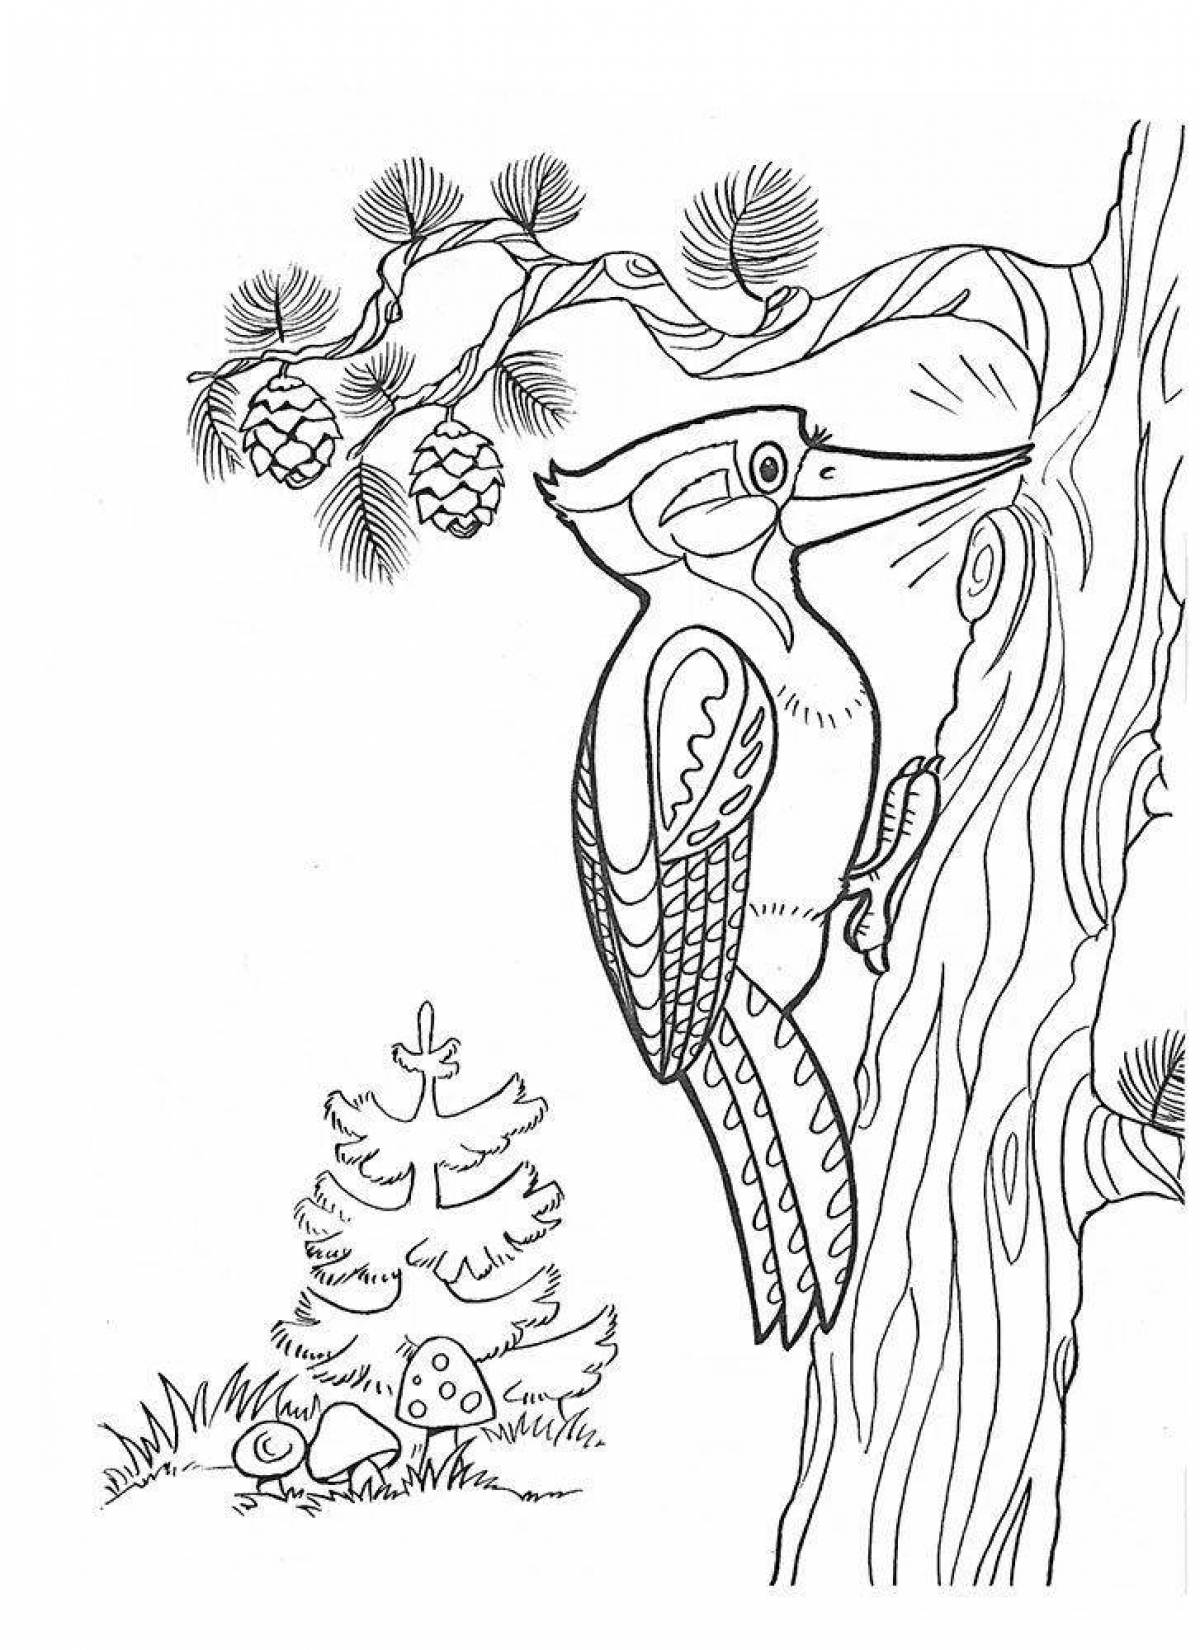 Woodpecker on a tree #5